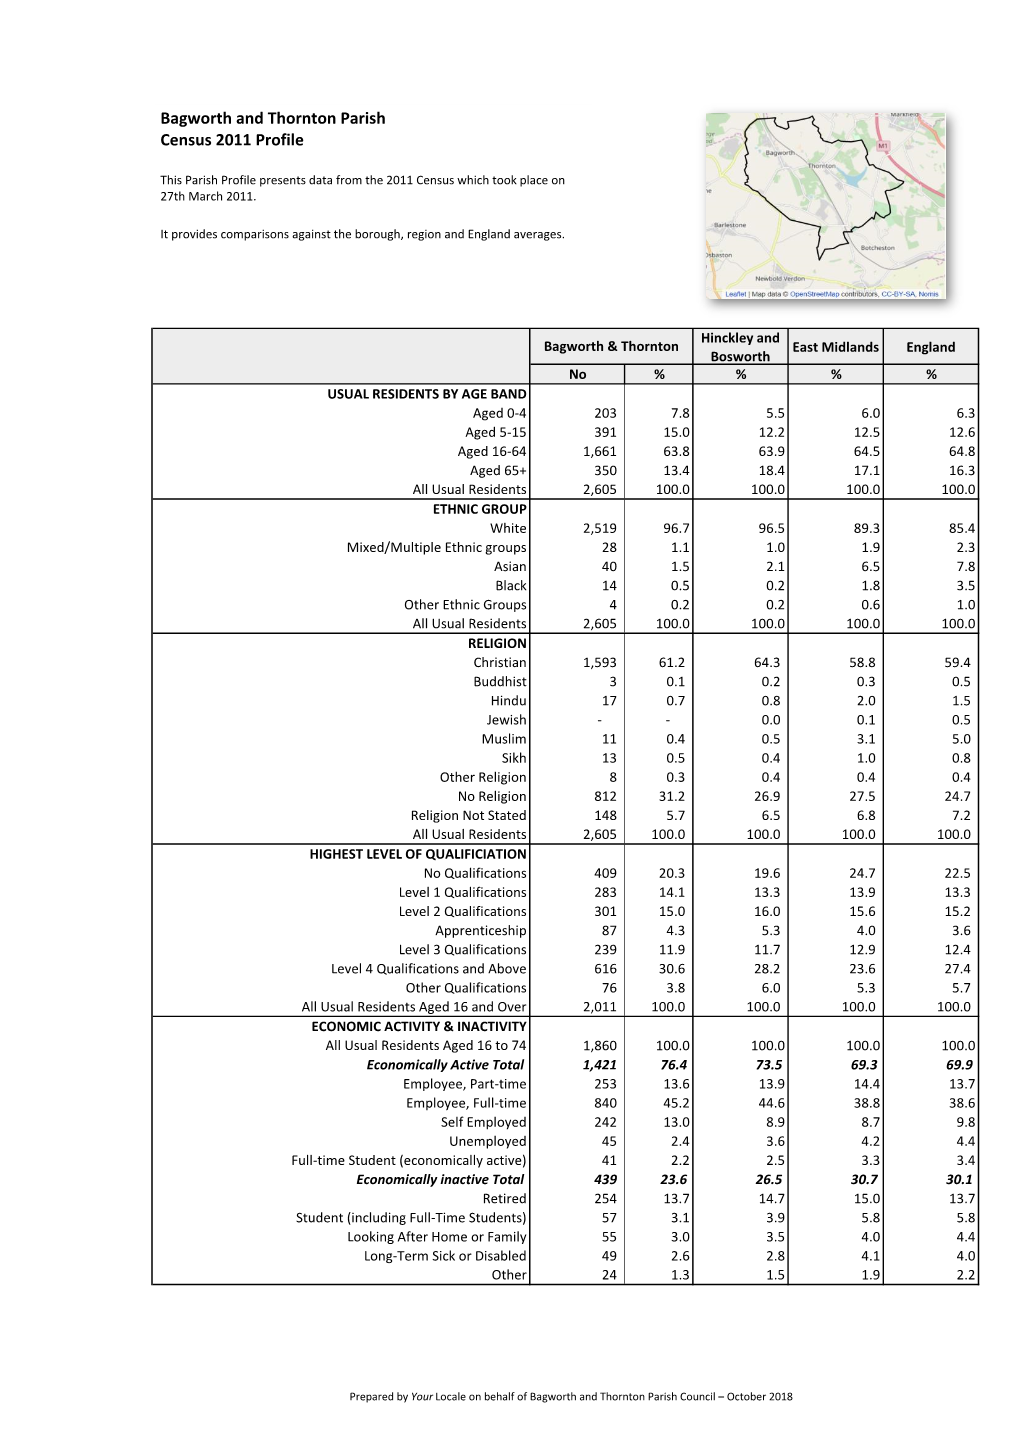 Bagworth and Thornton Parish Census 2011 Profile